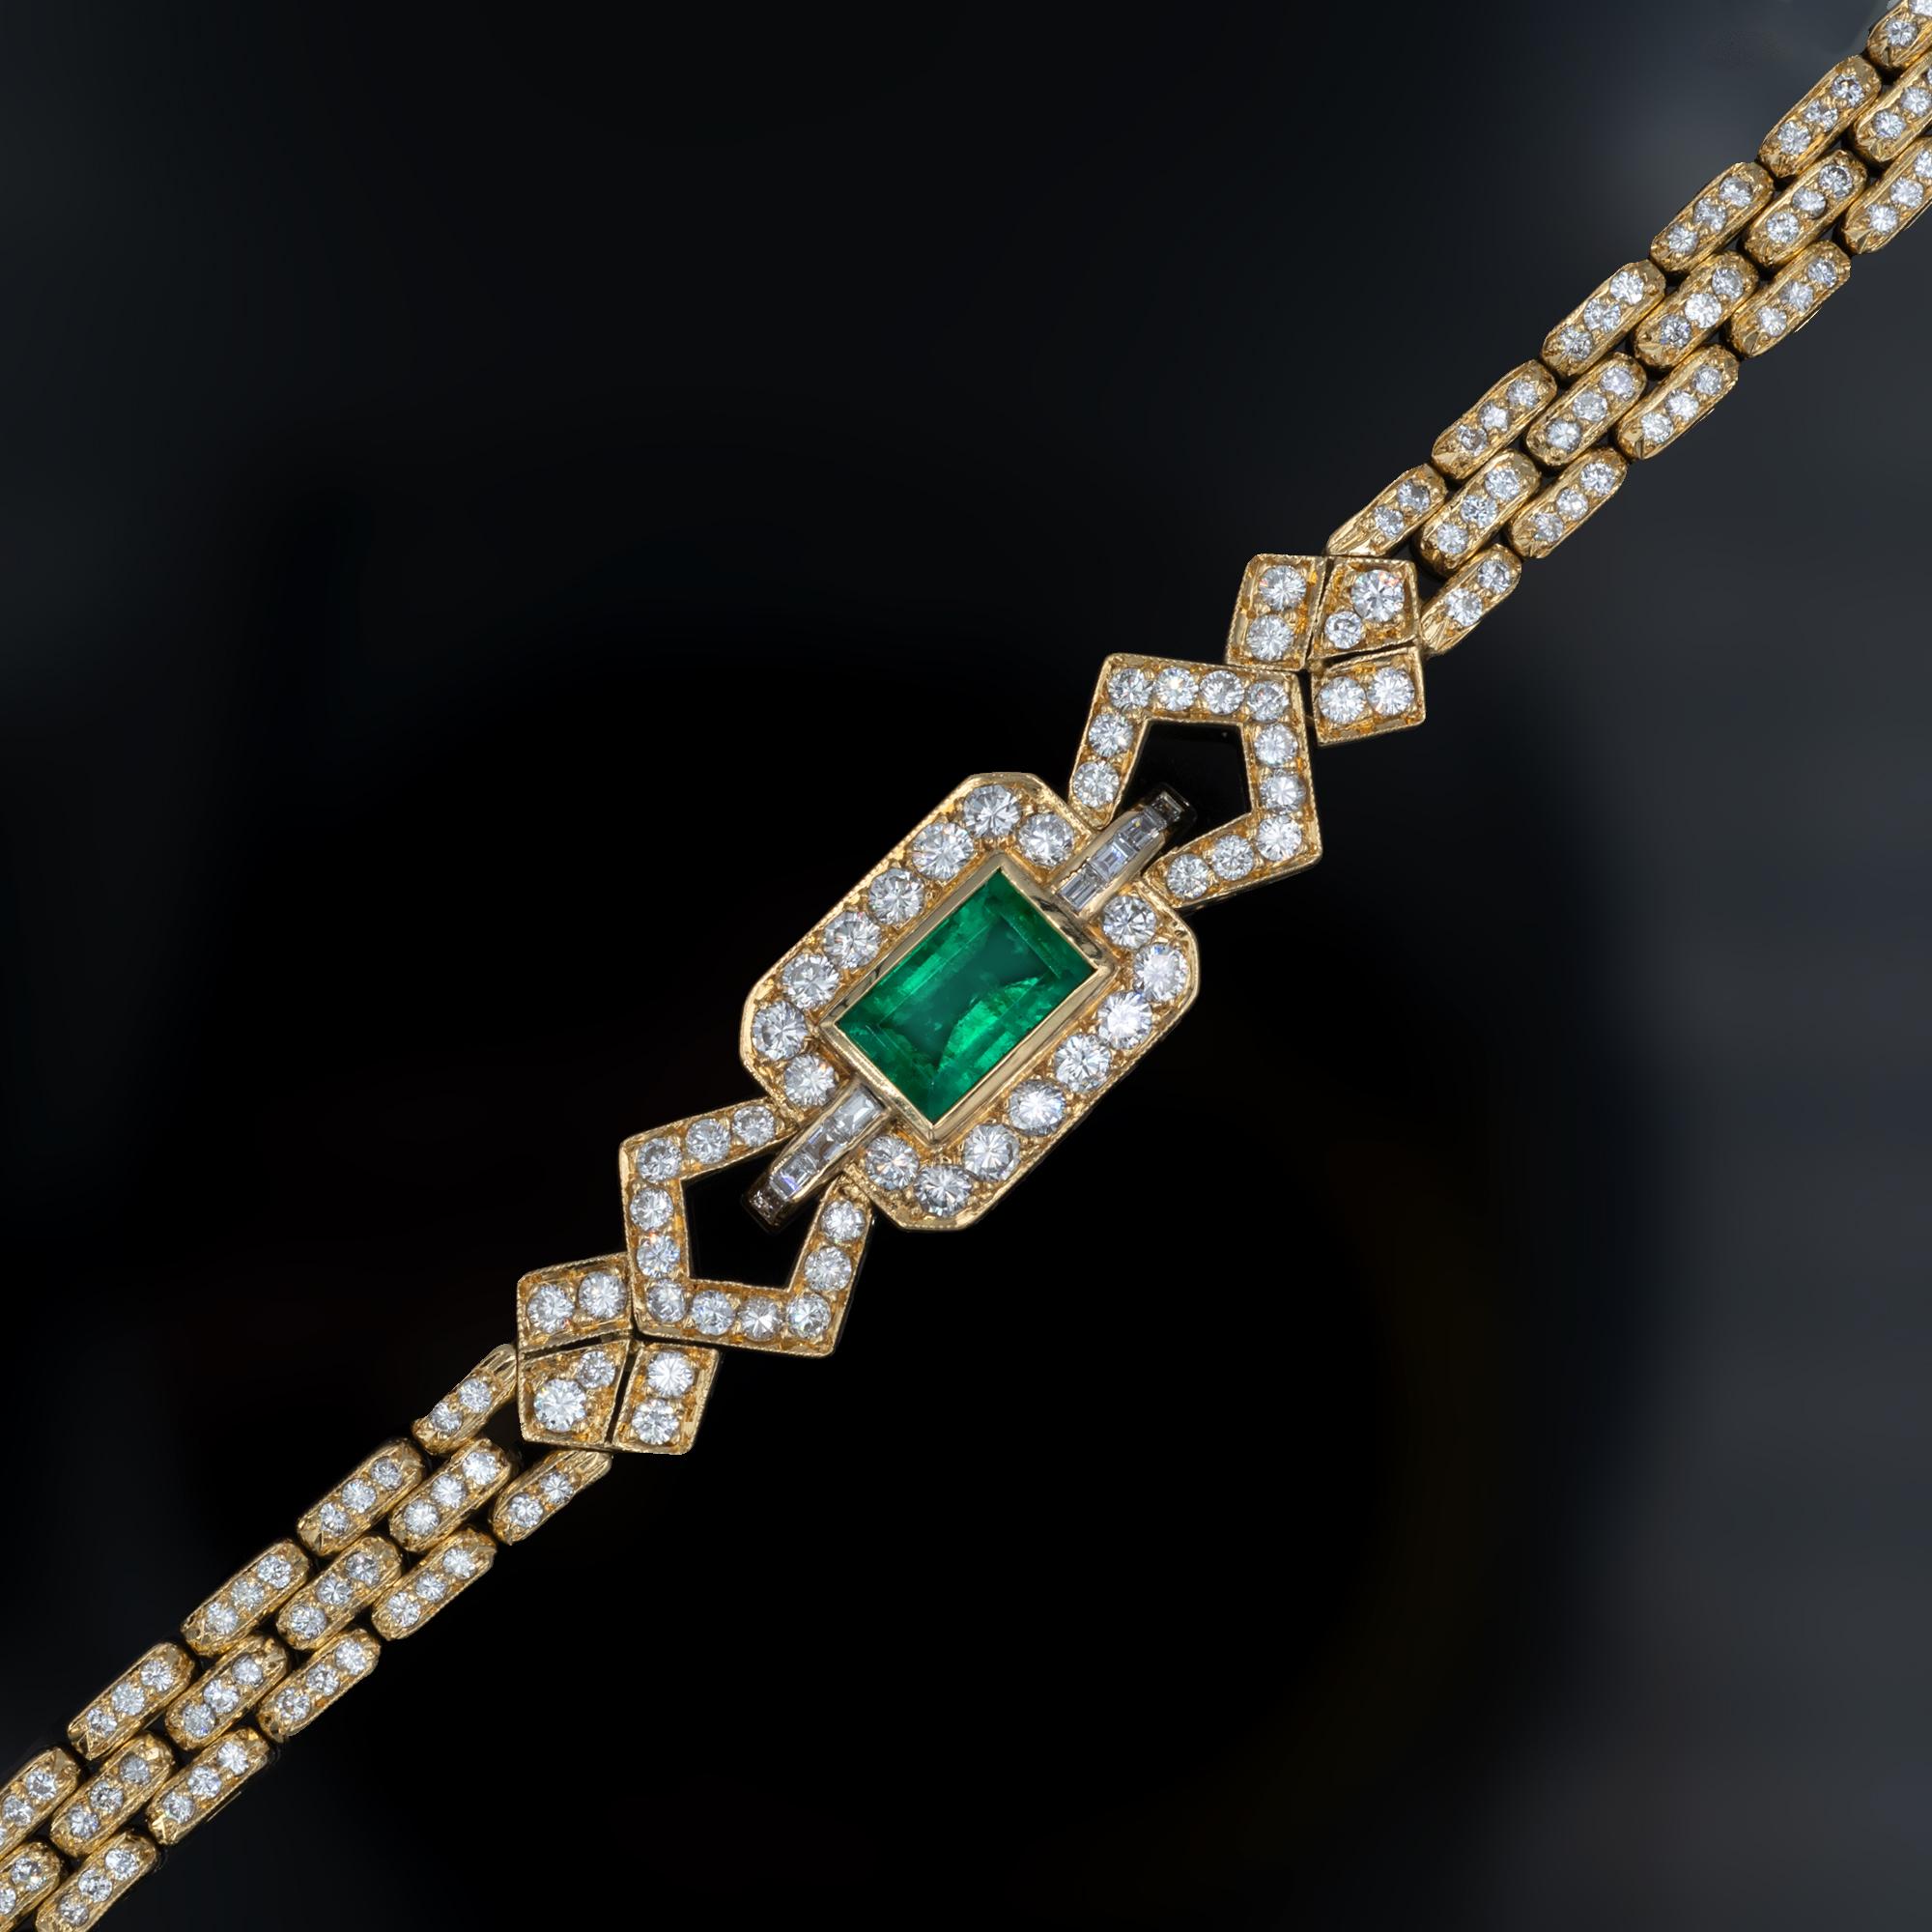 Bracelet en or jaune uni 18 carats mettant en valeur une belle émeraude de 2,31 carats présentant à la fois de la vivacité et une couleur verte saturée. Ce bracelet à maillons est entièrement serti de diamants blancs de haute qualité  F-G / VVS-VS